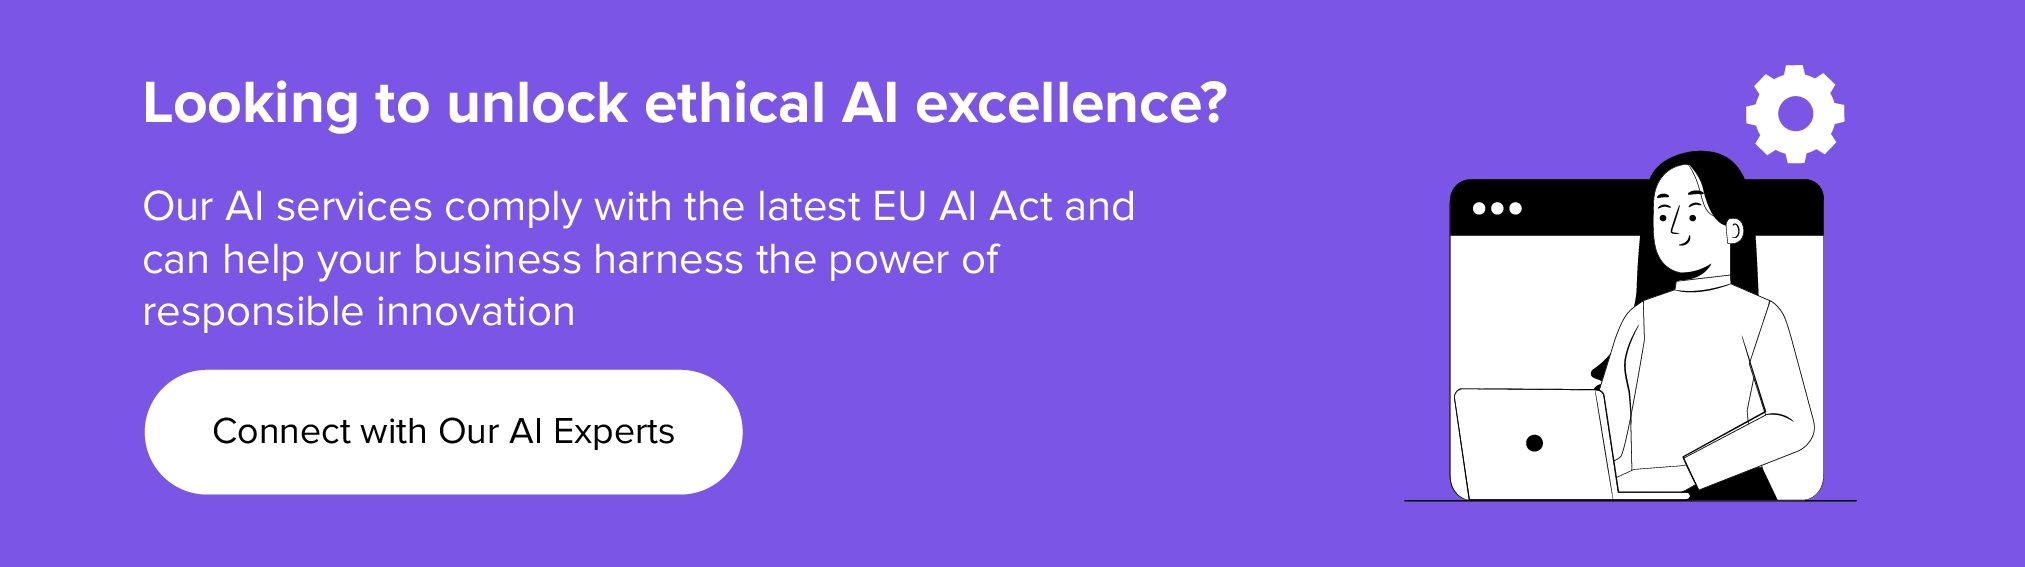 colabore conosco para desbloquear a excelência ética em IA